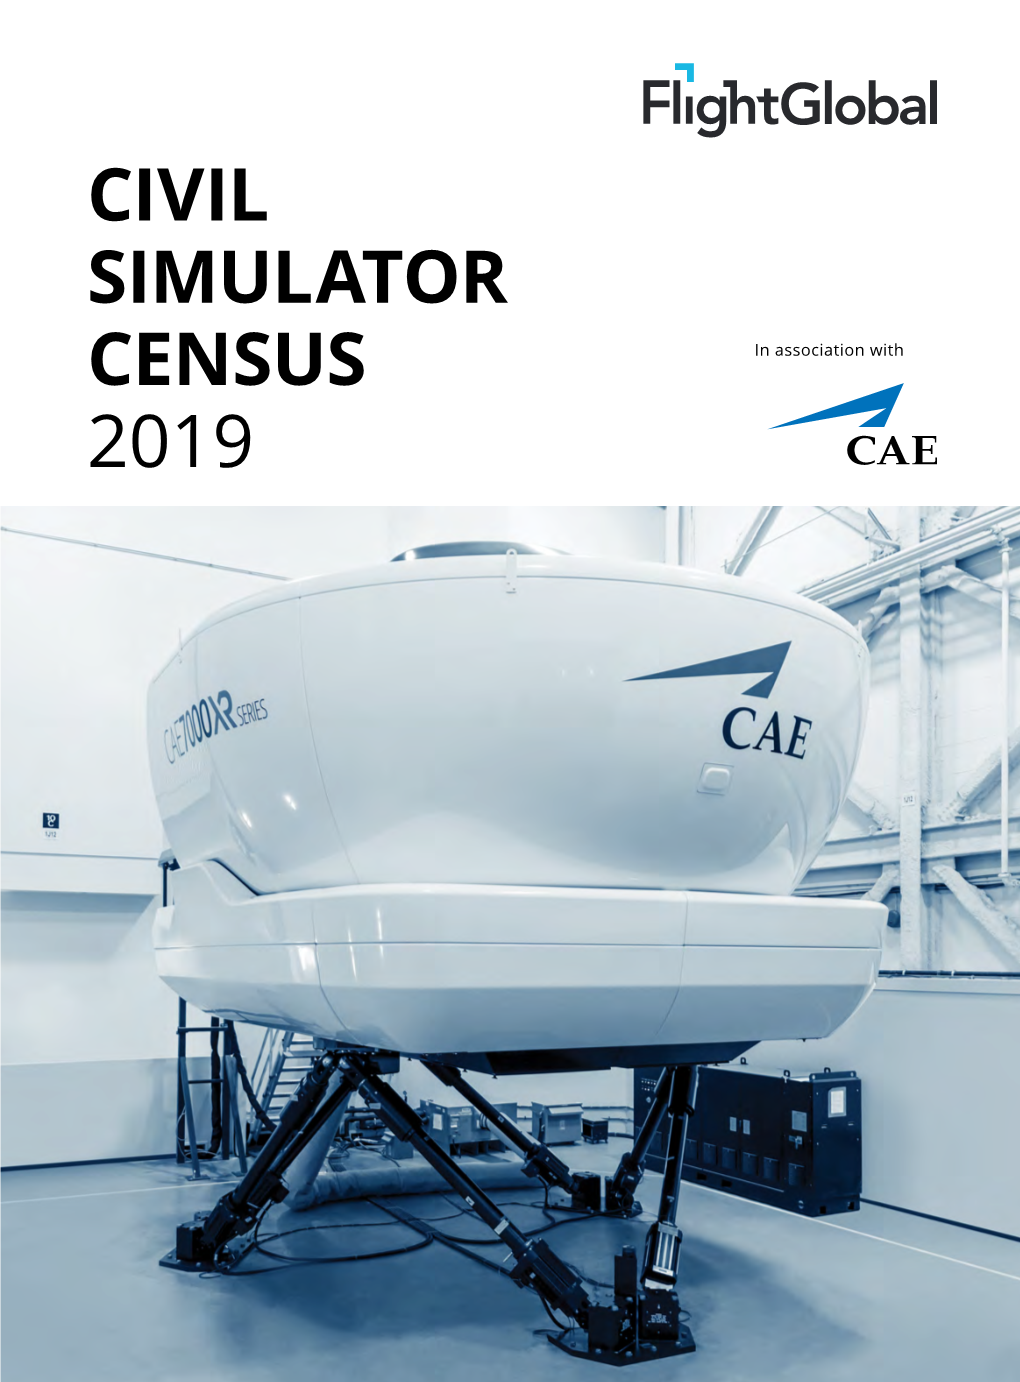 Civil Simulator Census 2019 Contents